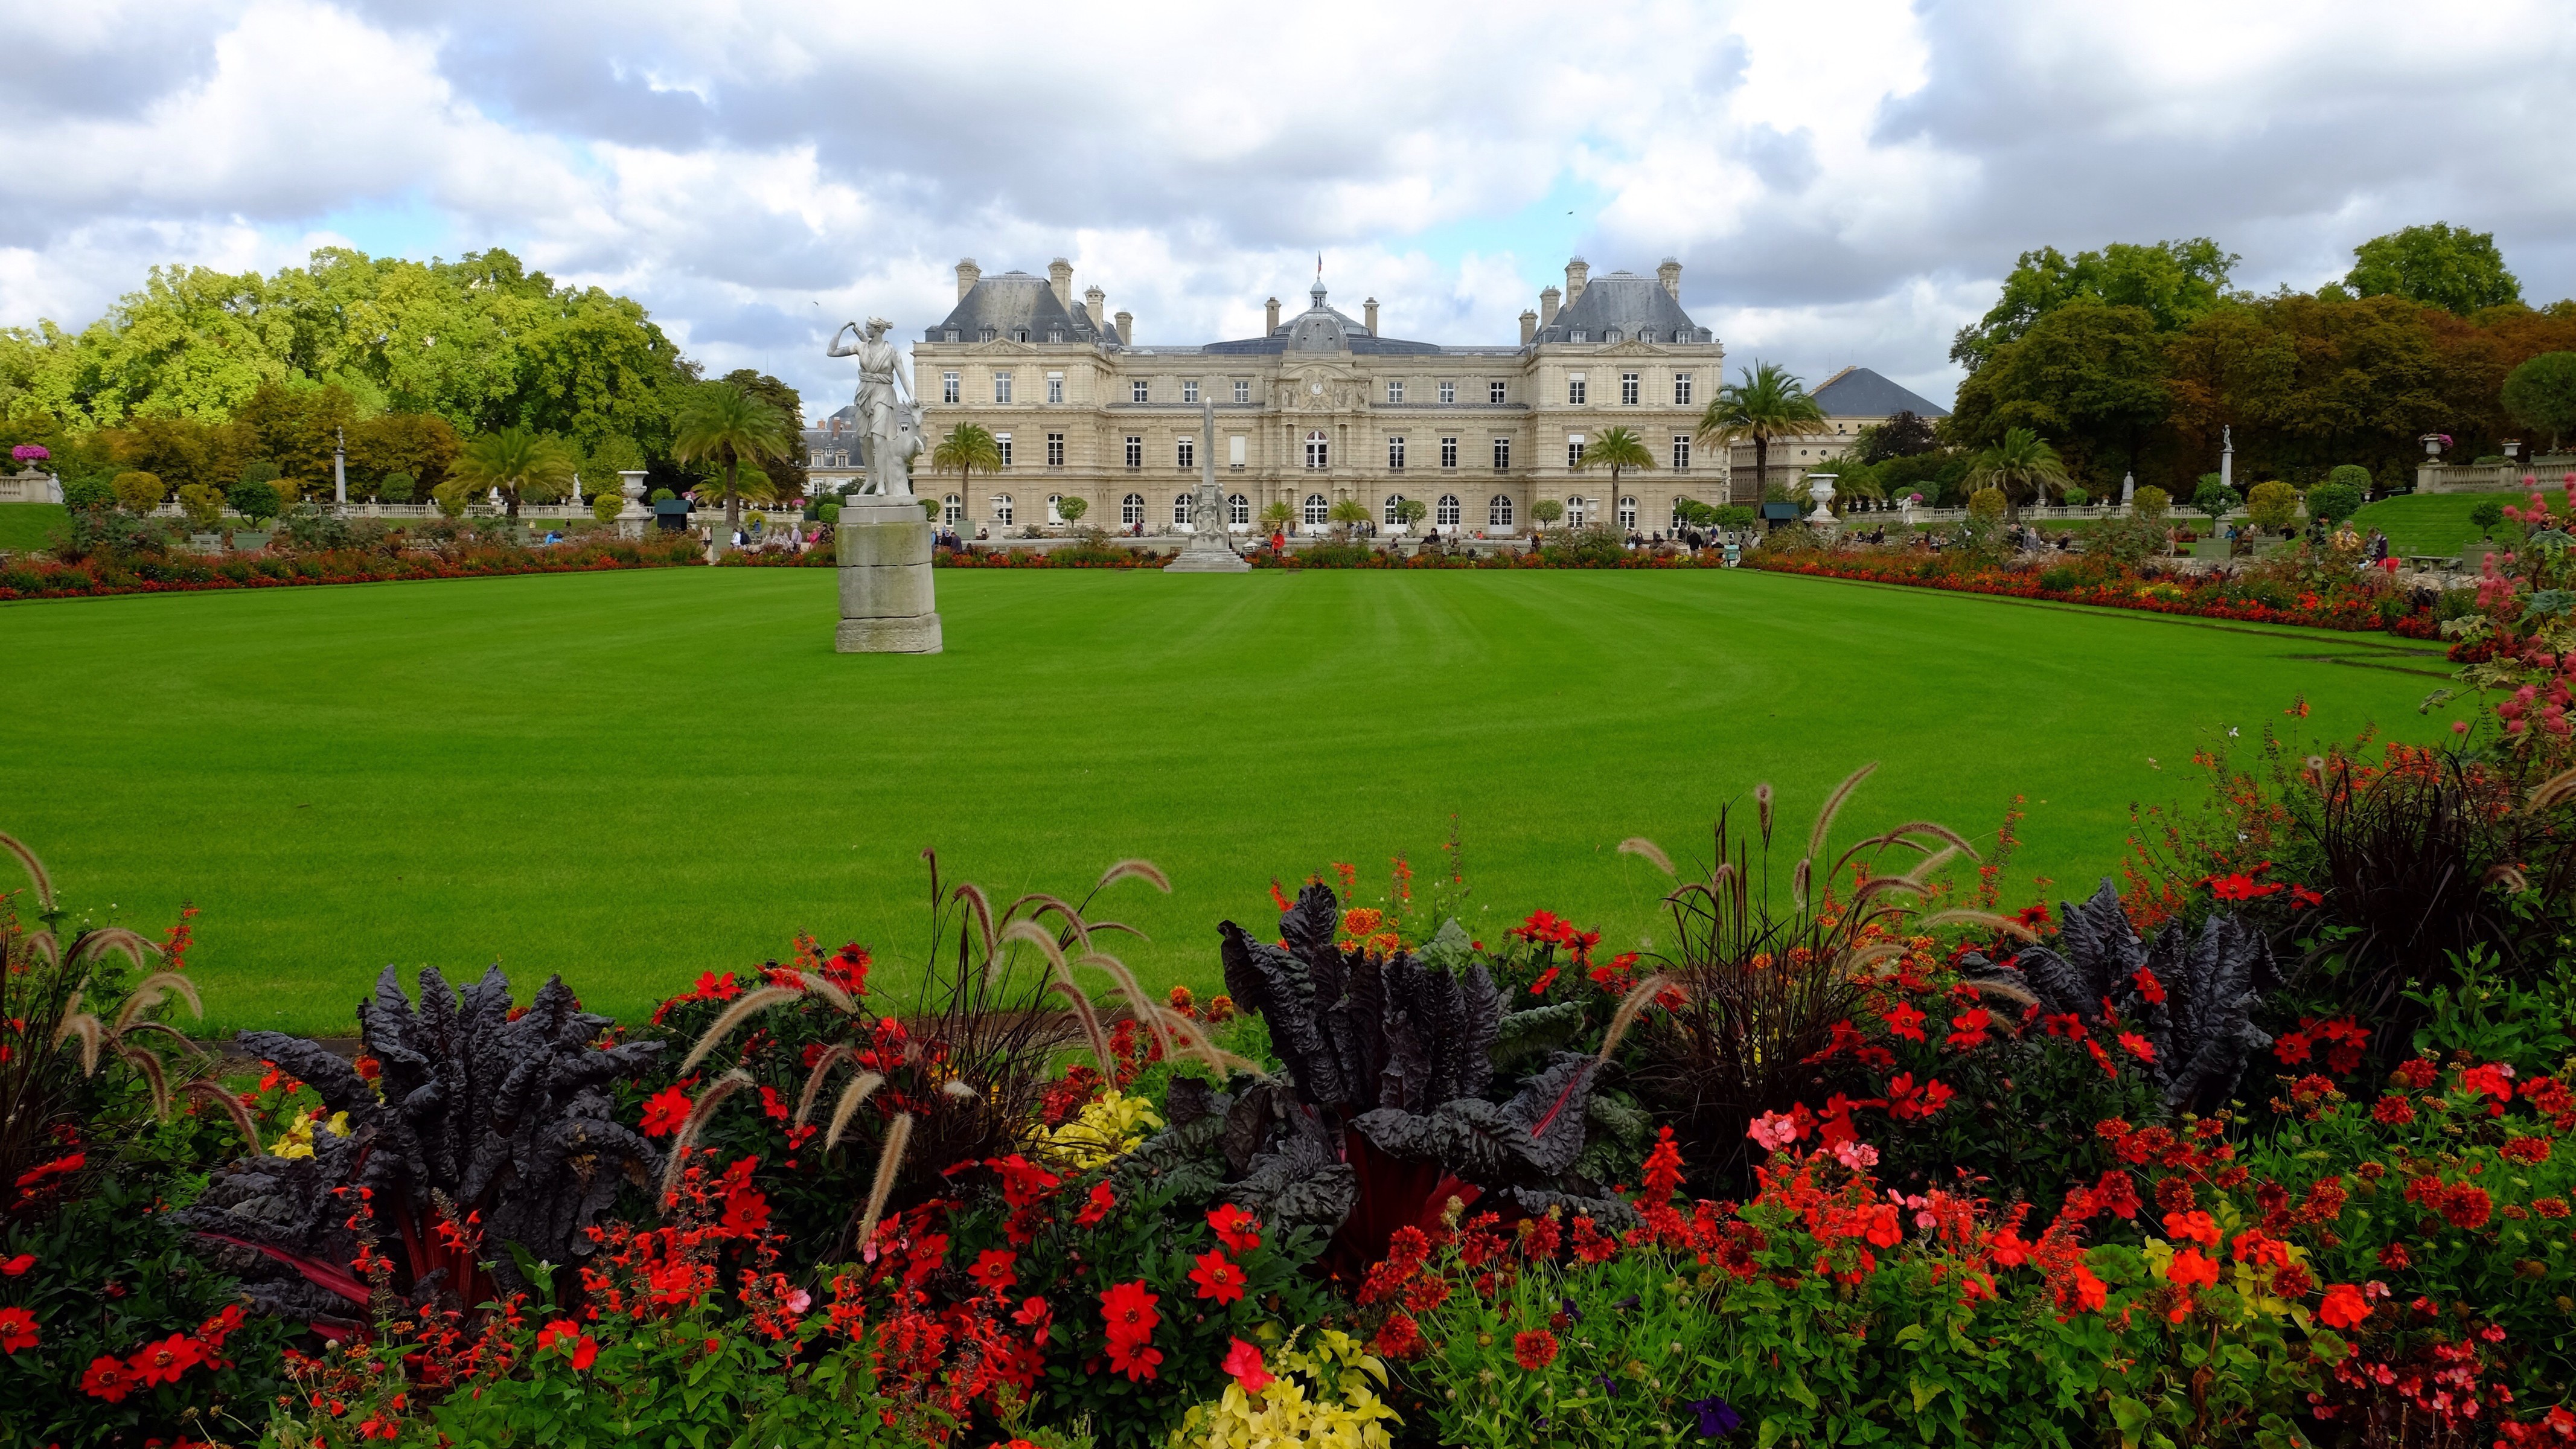 Luxemburg Gardens